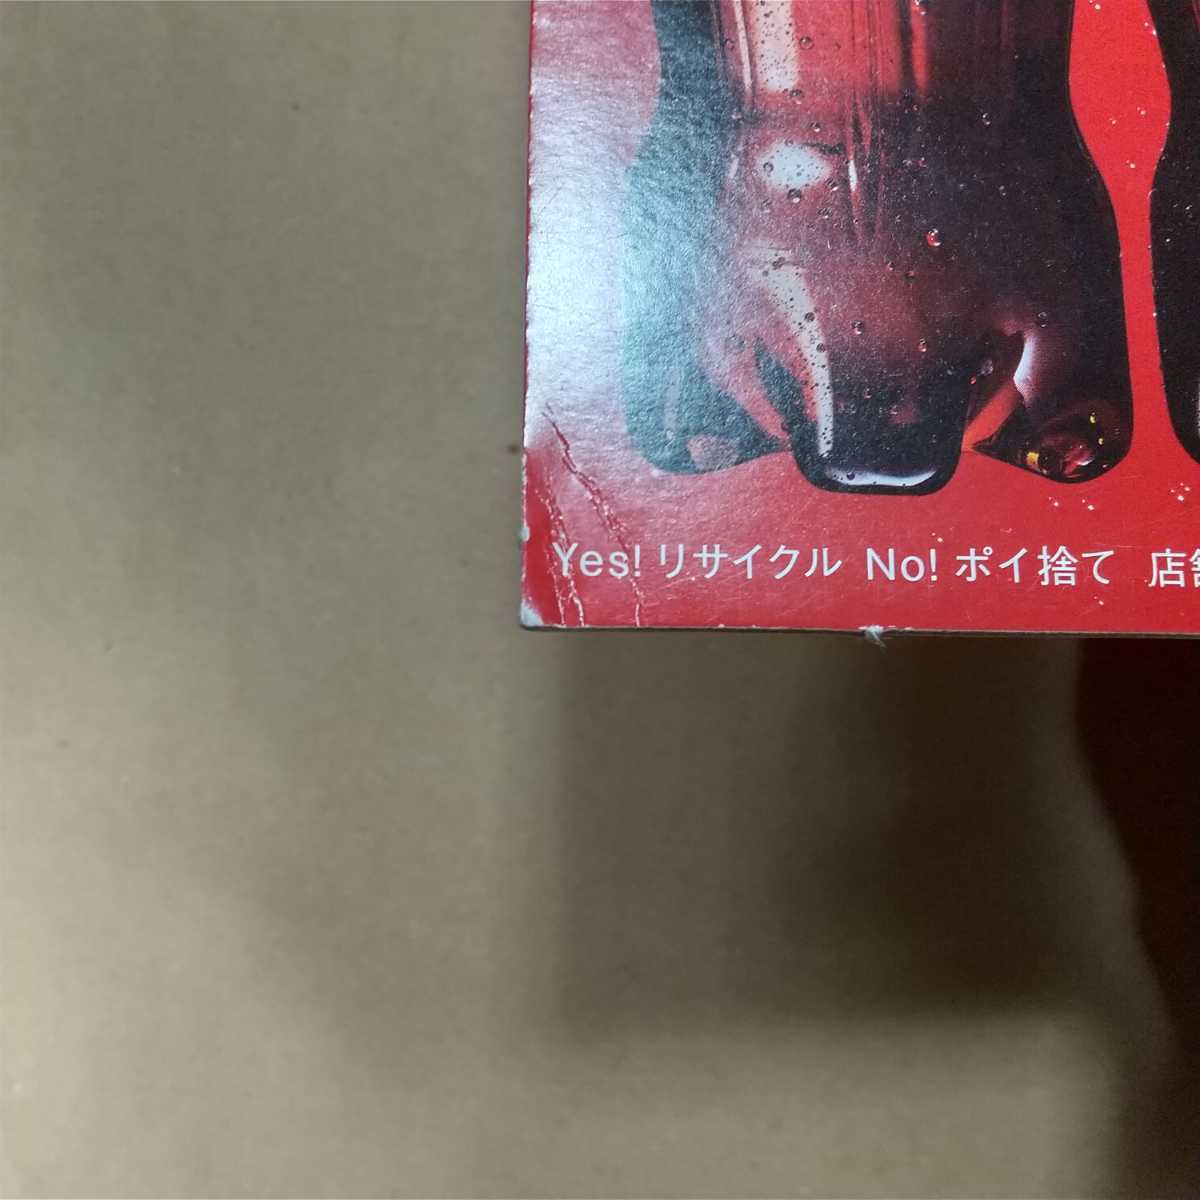 NiziU большой панель pop Coca * Cola не продается 